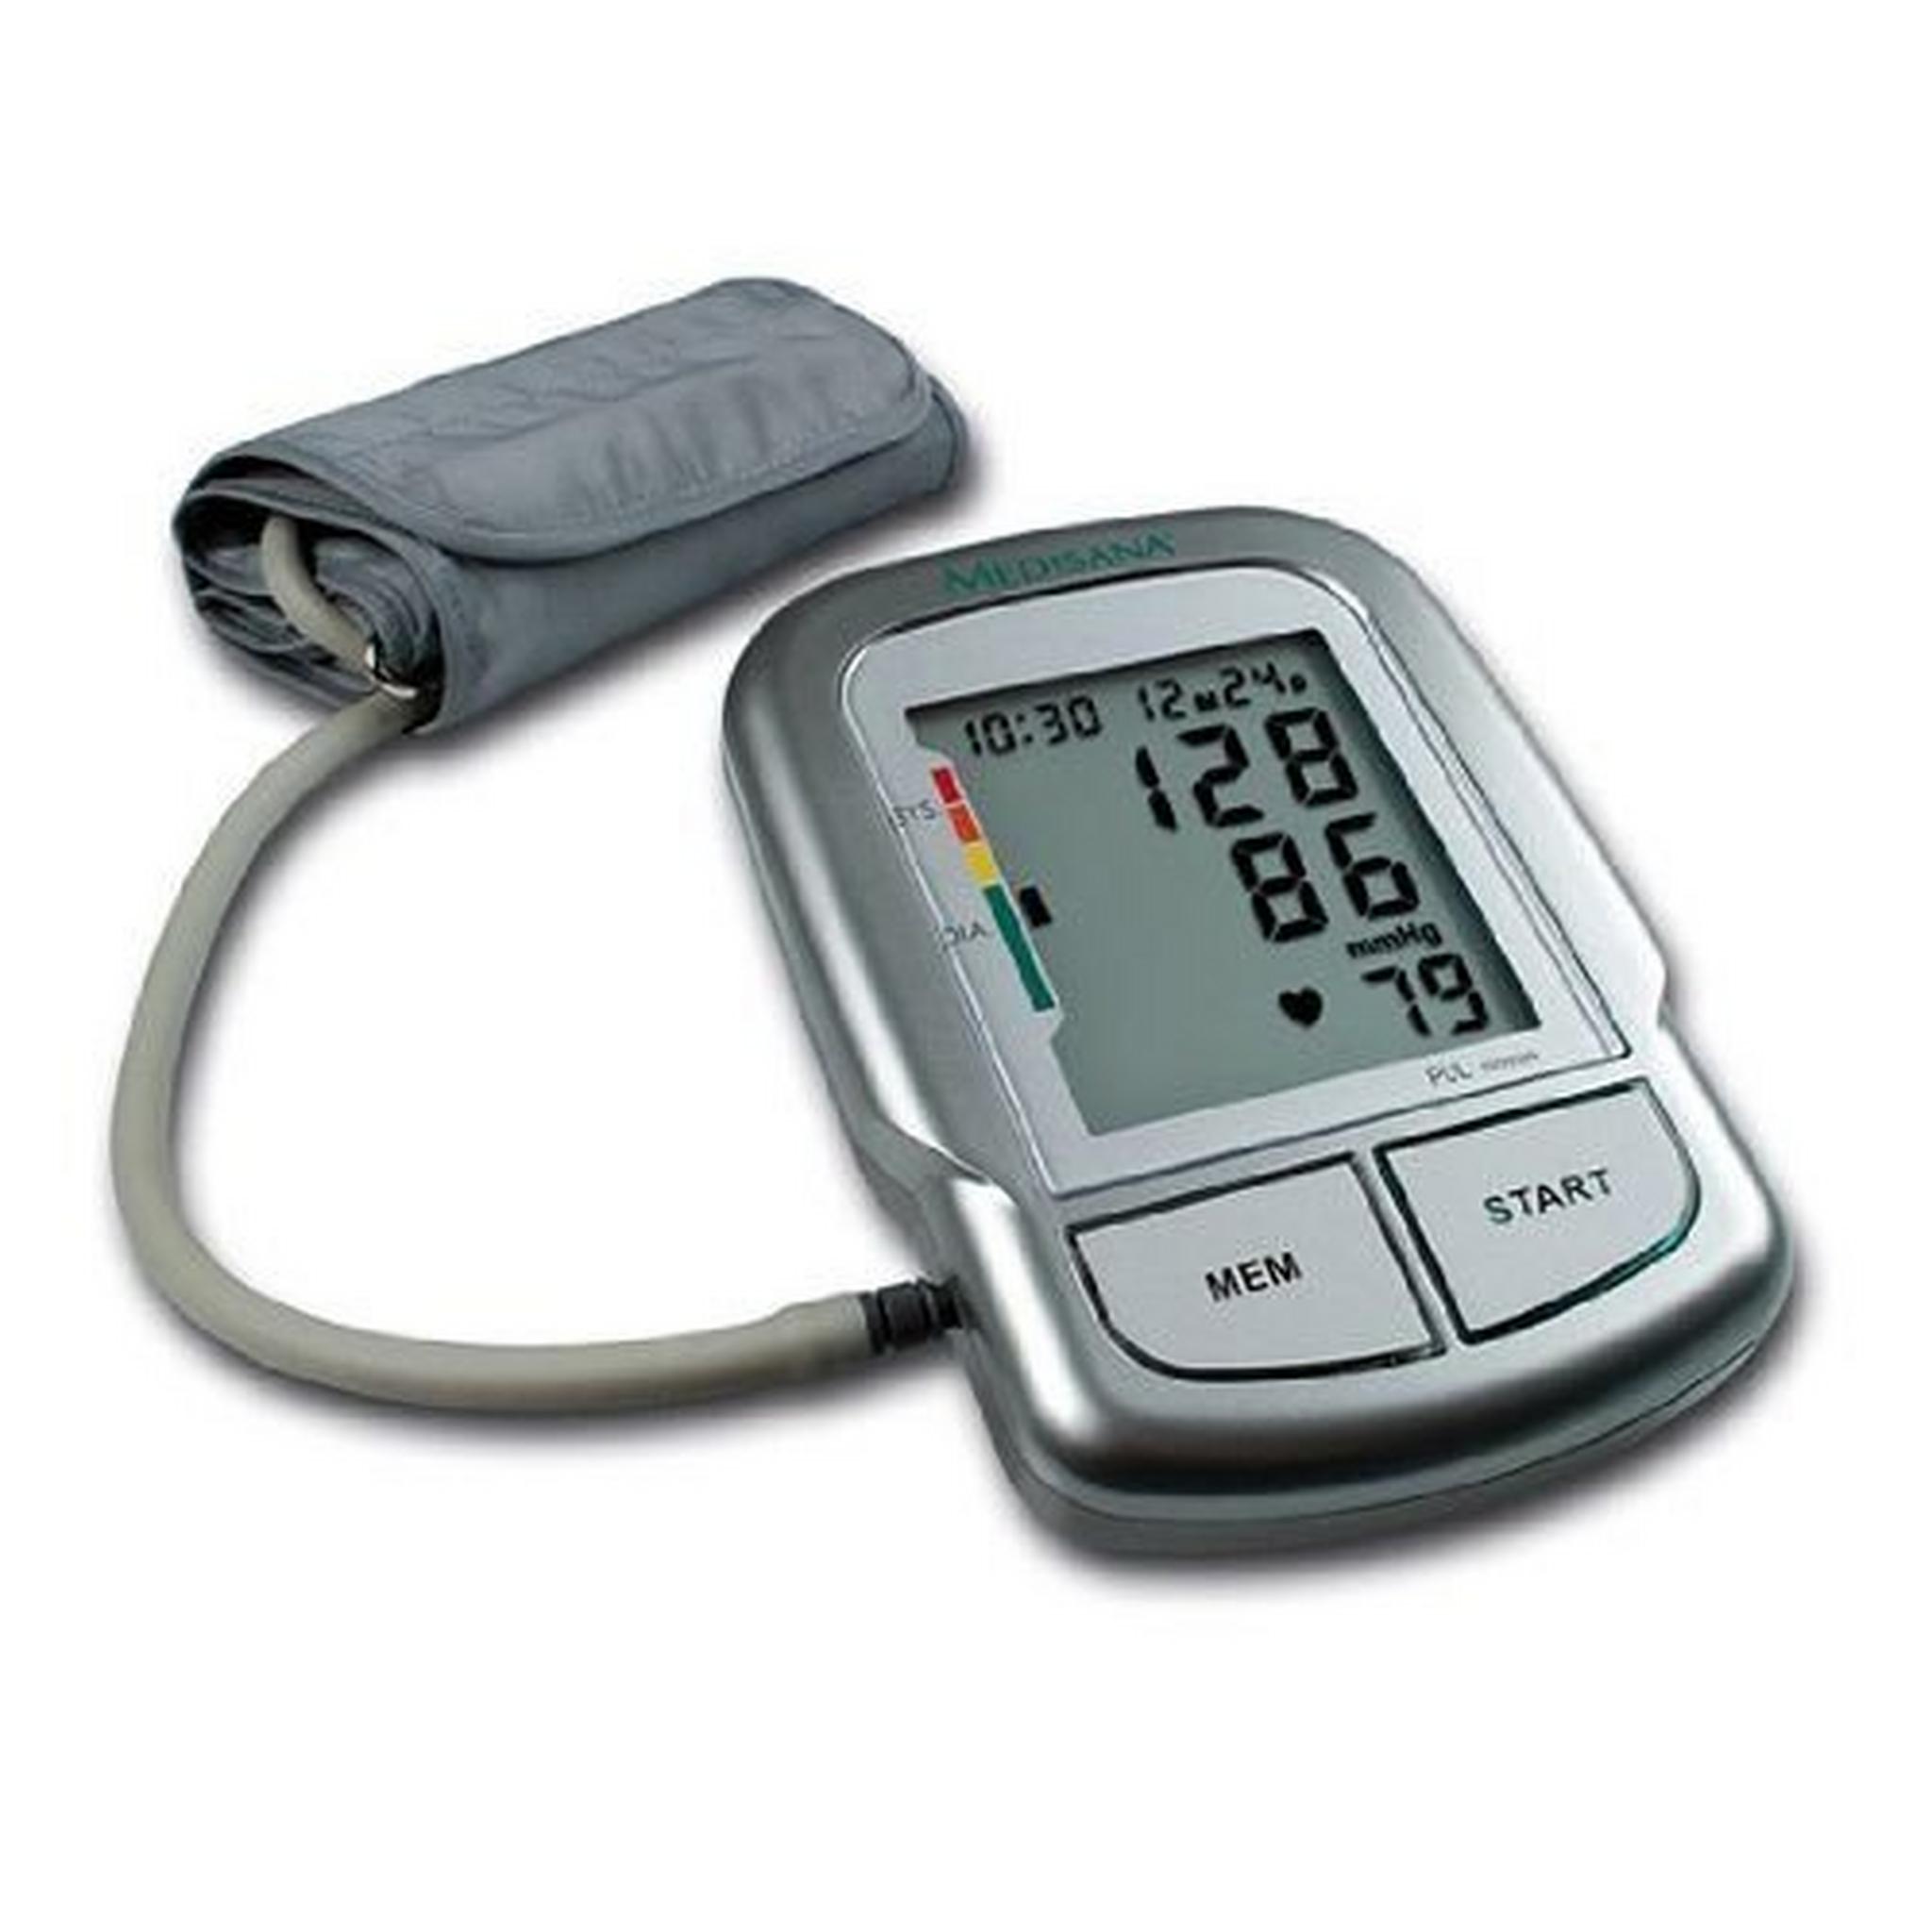 ميزان قياس ضغط الدم من ميديسانا مع خاصية الصوت - رمادي